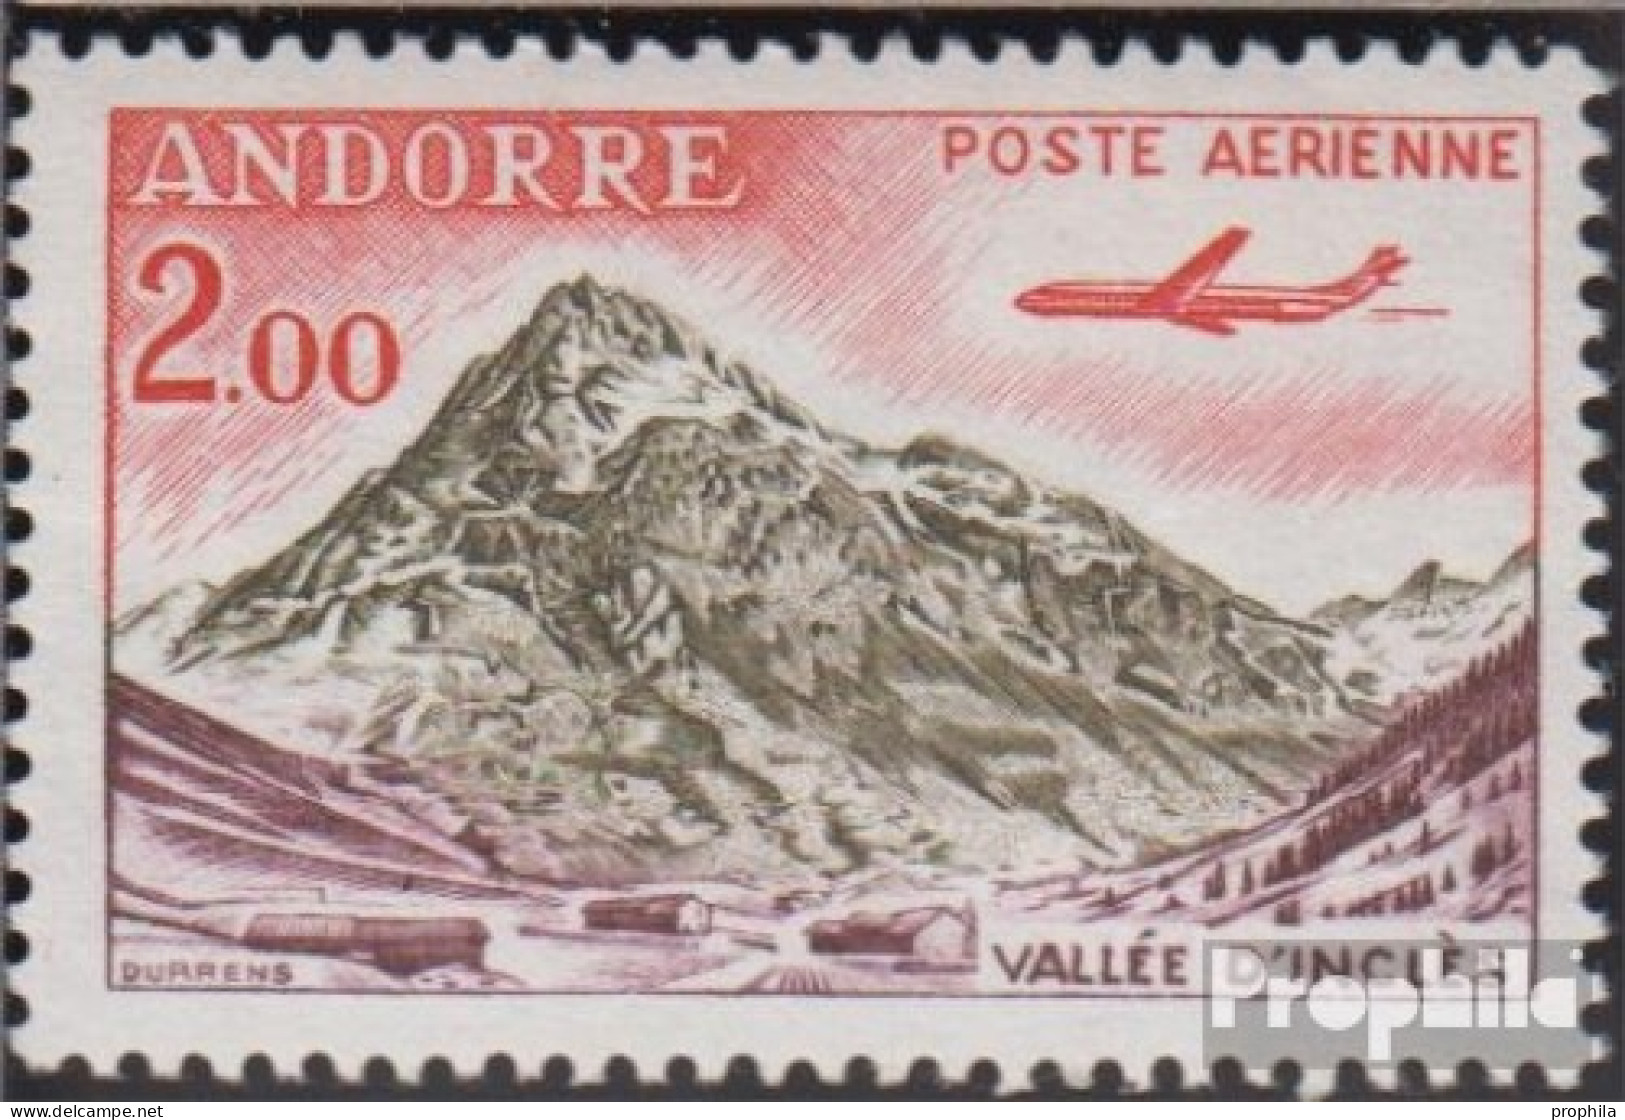 Andorra - Französische Post 175 Postfrisch 1961 Landschaften - Libretti